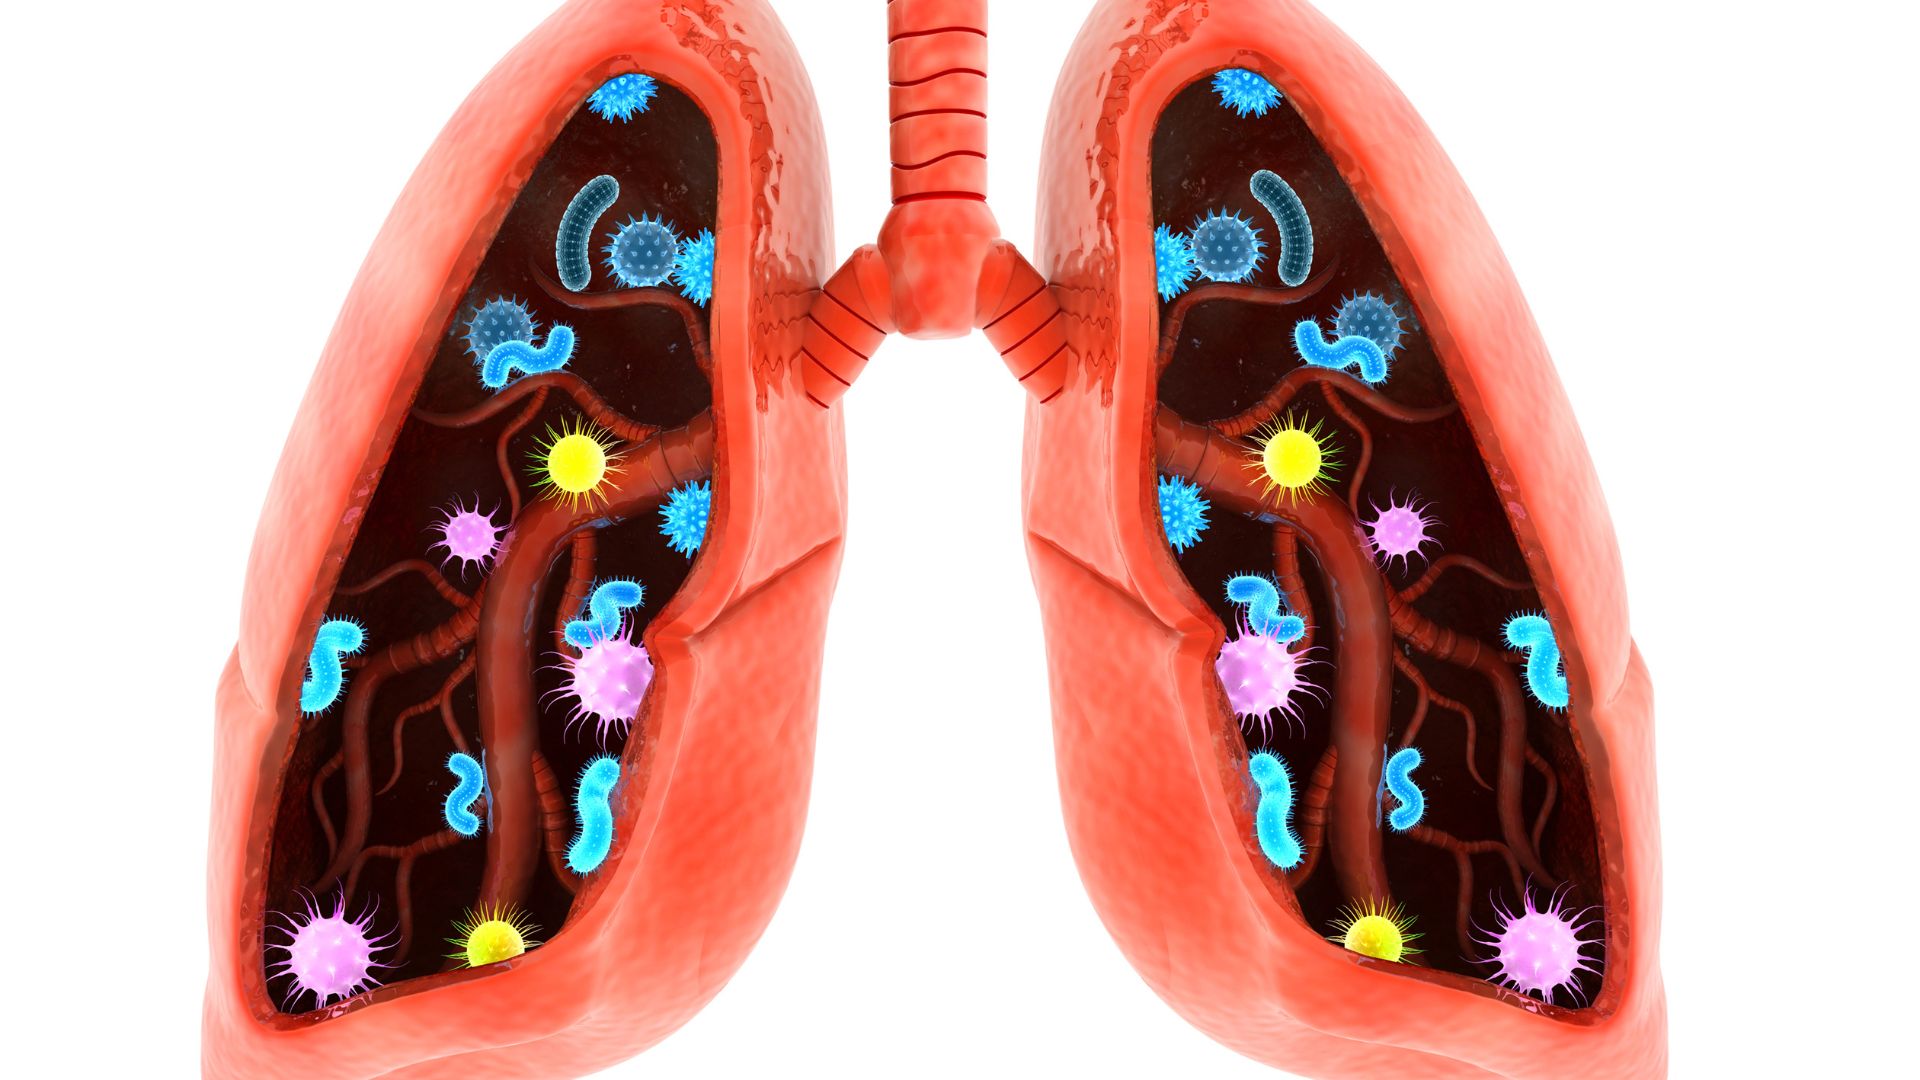 Czym charakteryzują się choroby śródmiąższowe płuc?